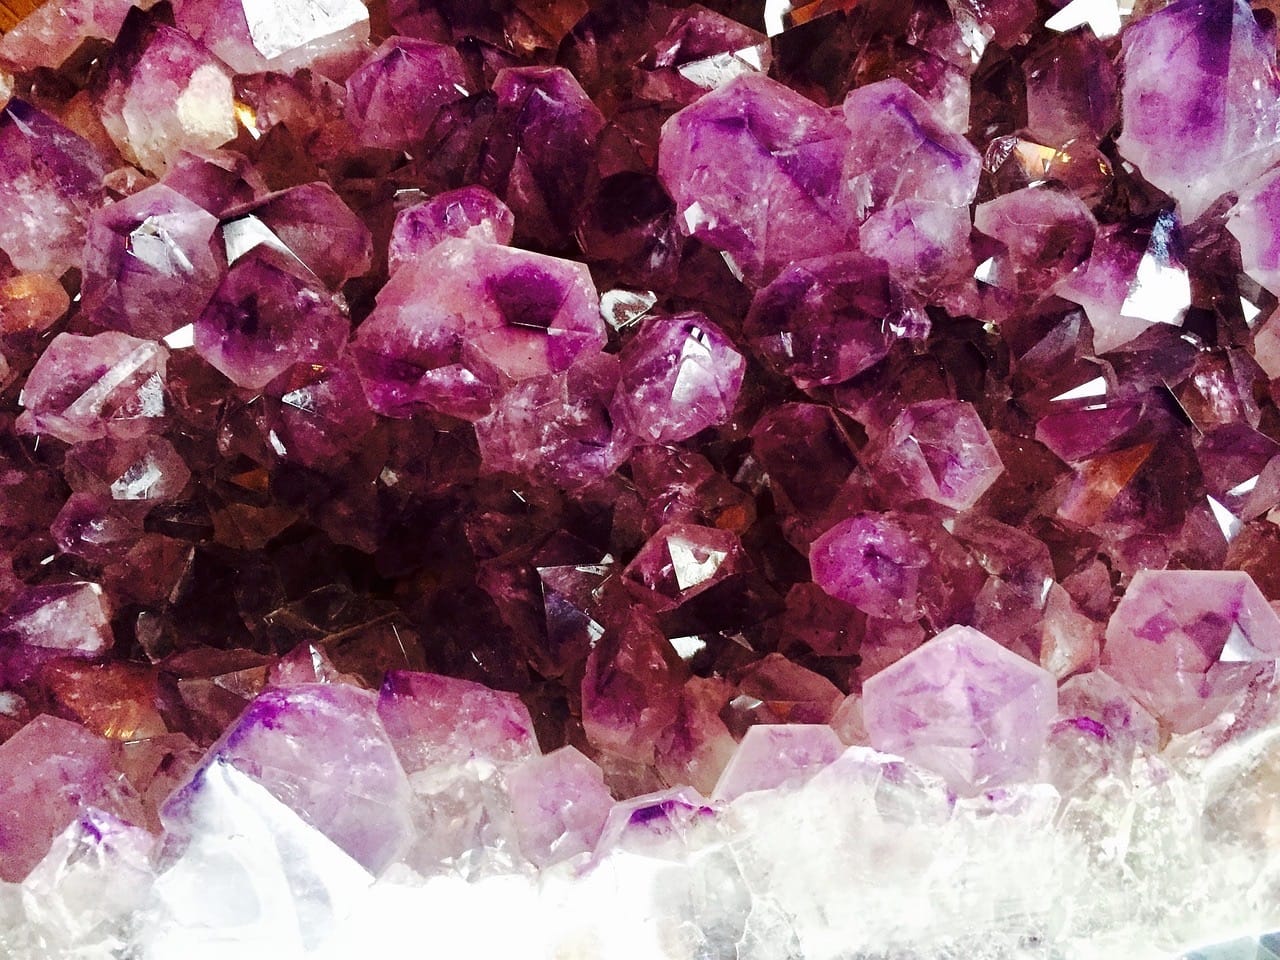 Uncommon Gemstones